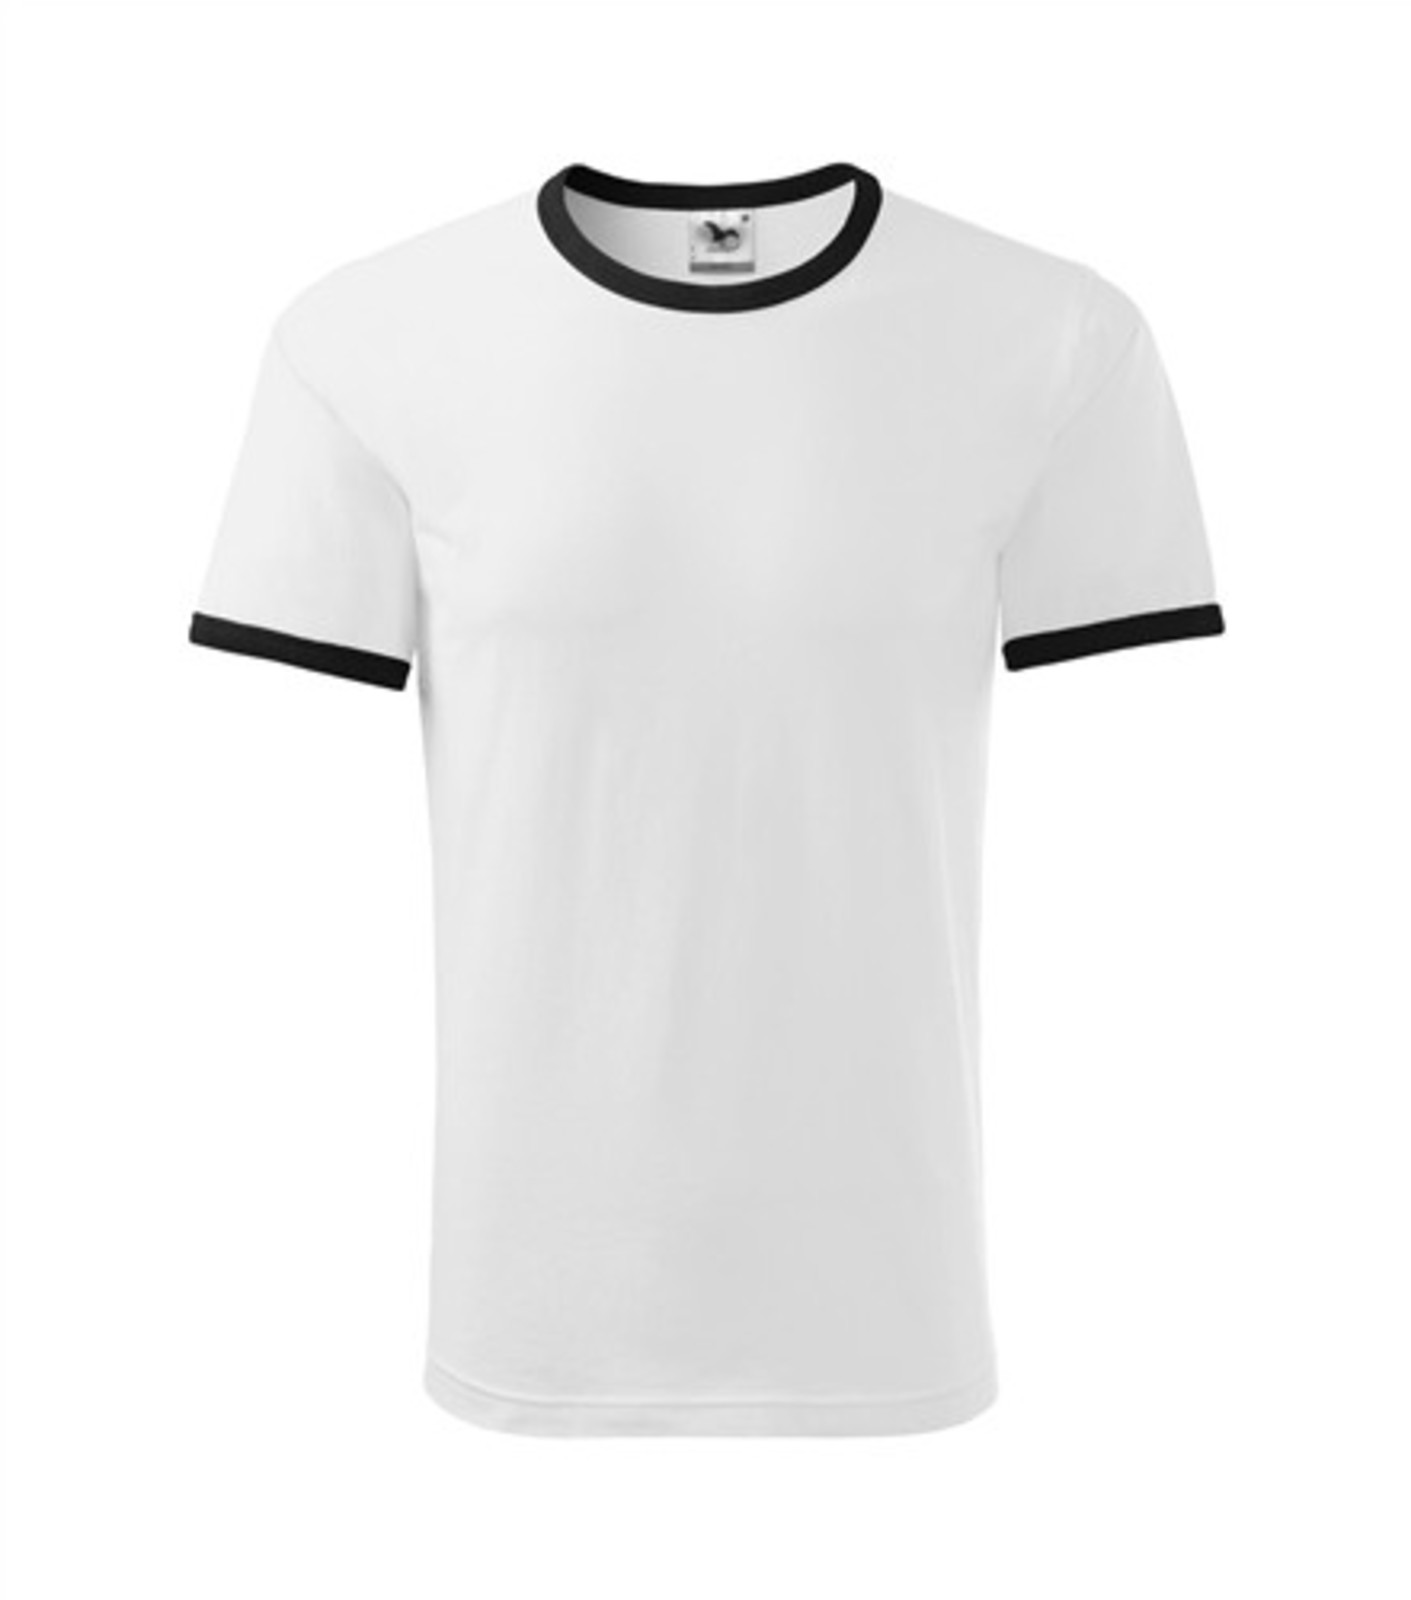 Unisex tričko Adler Infinity 131 - veľkosť: XL, farba: biela/čierna